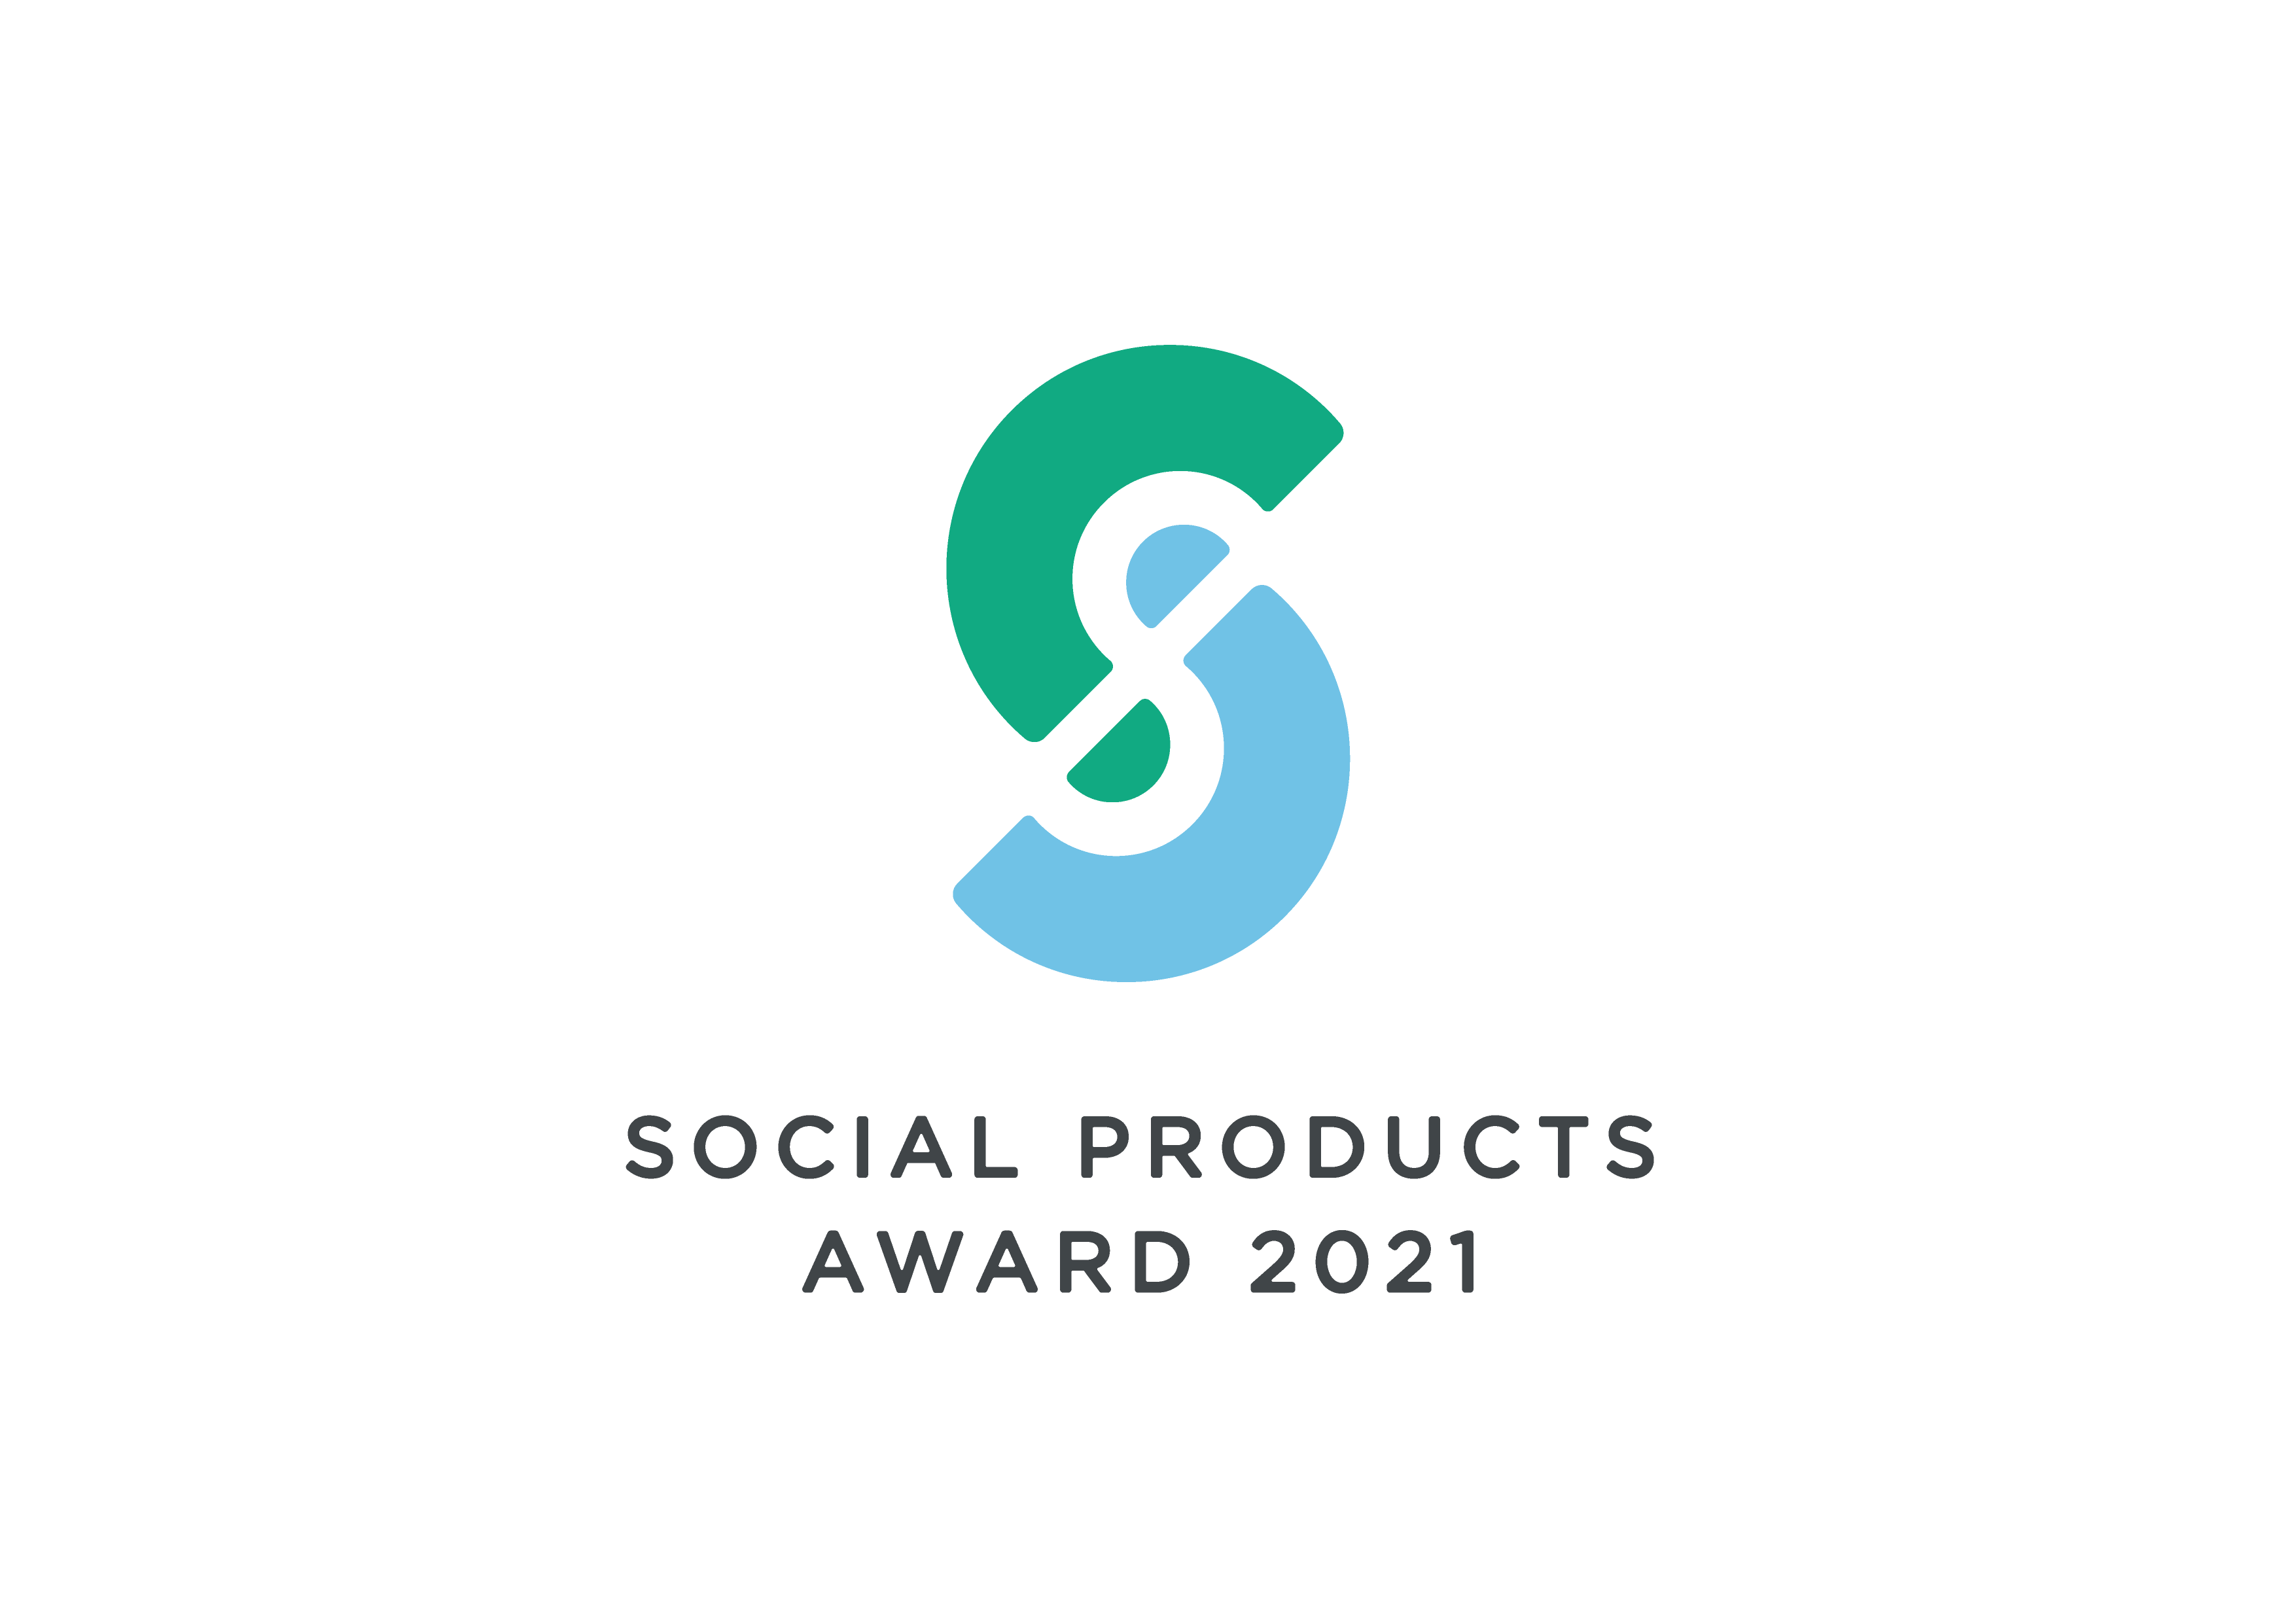 ソーシャルプロダクツ・アワード2021を受賞